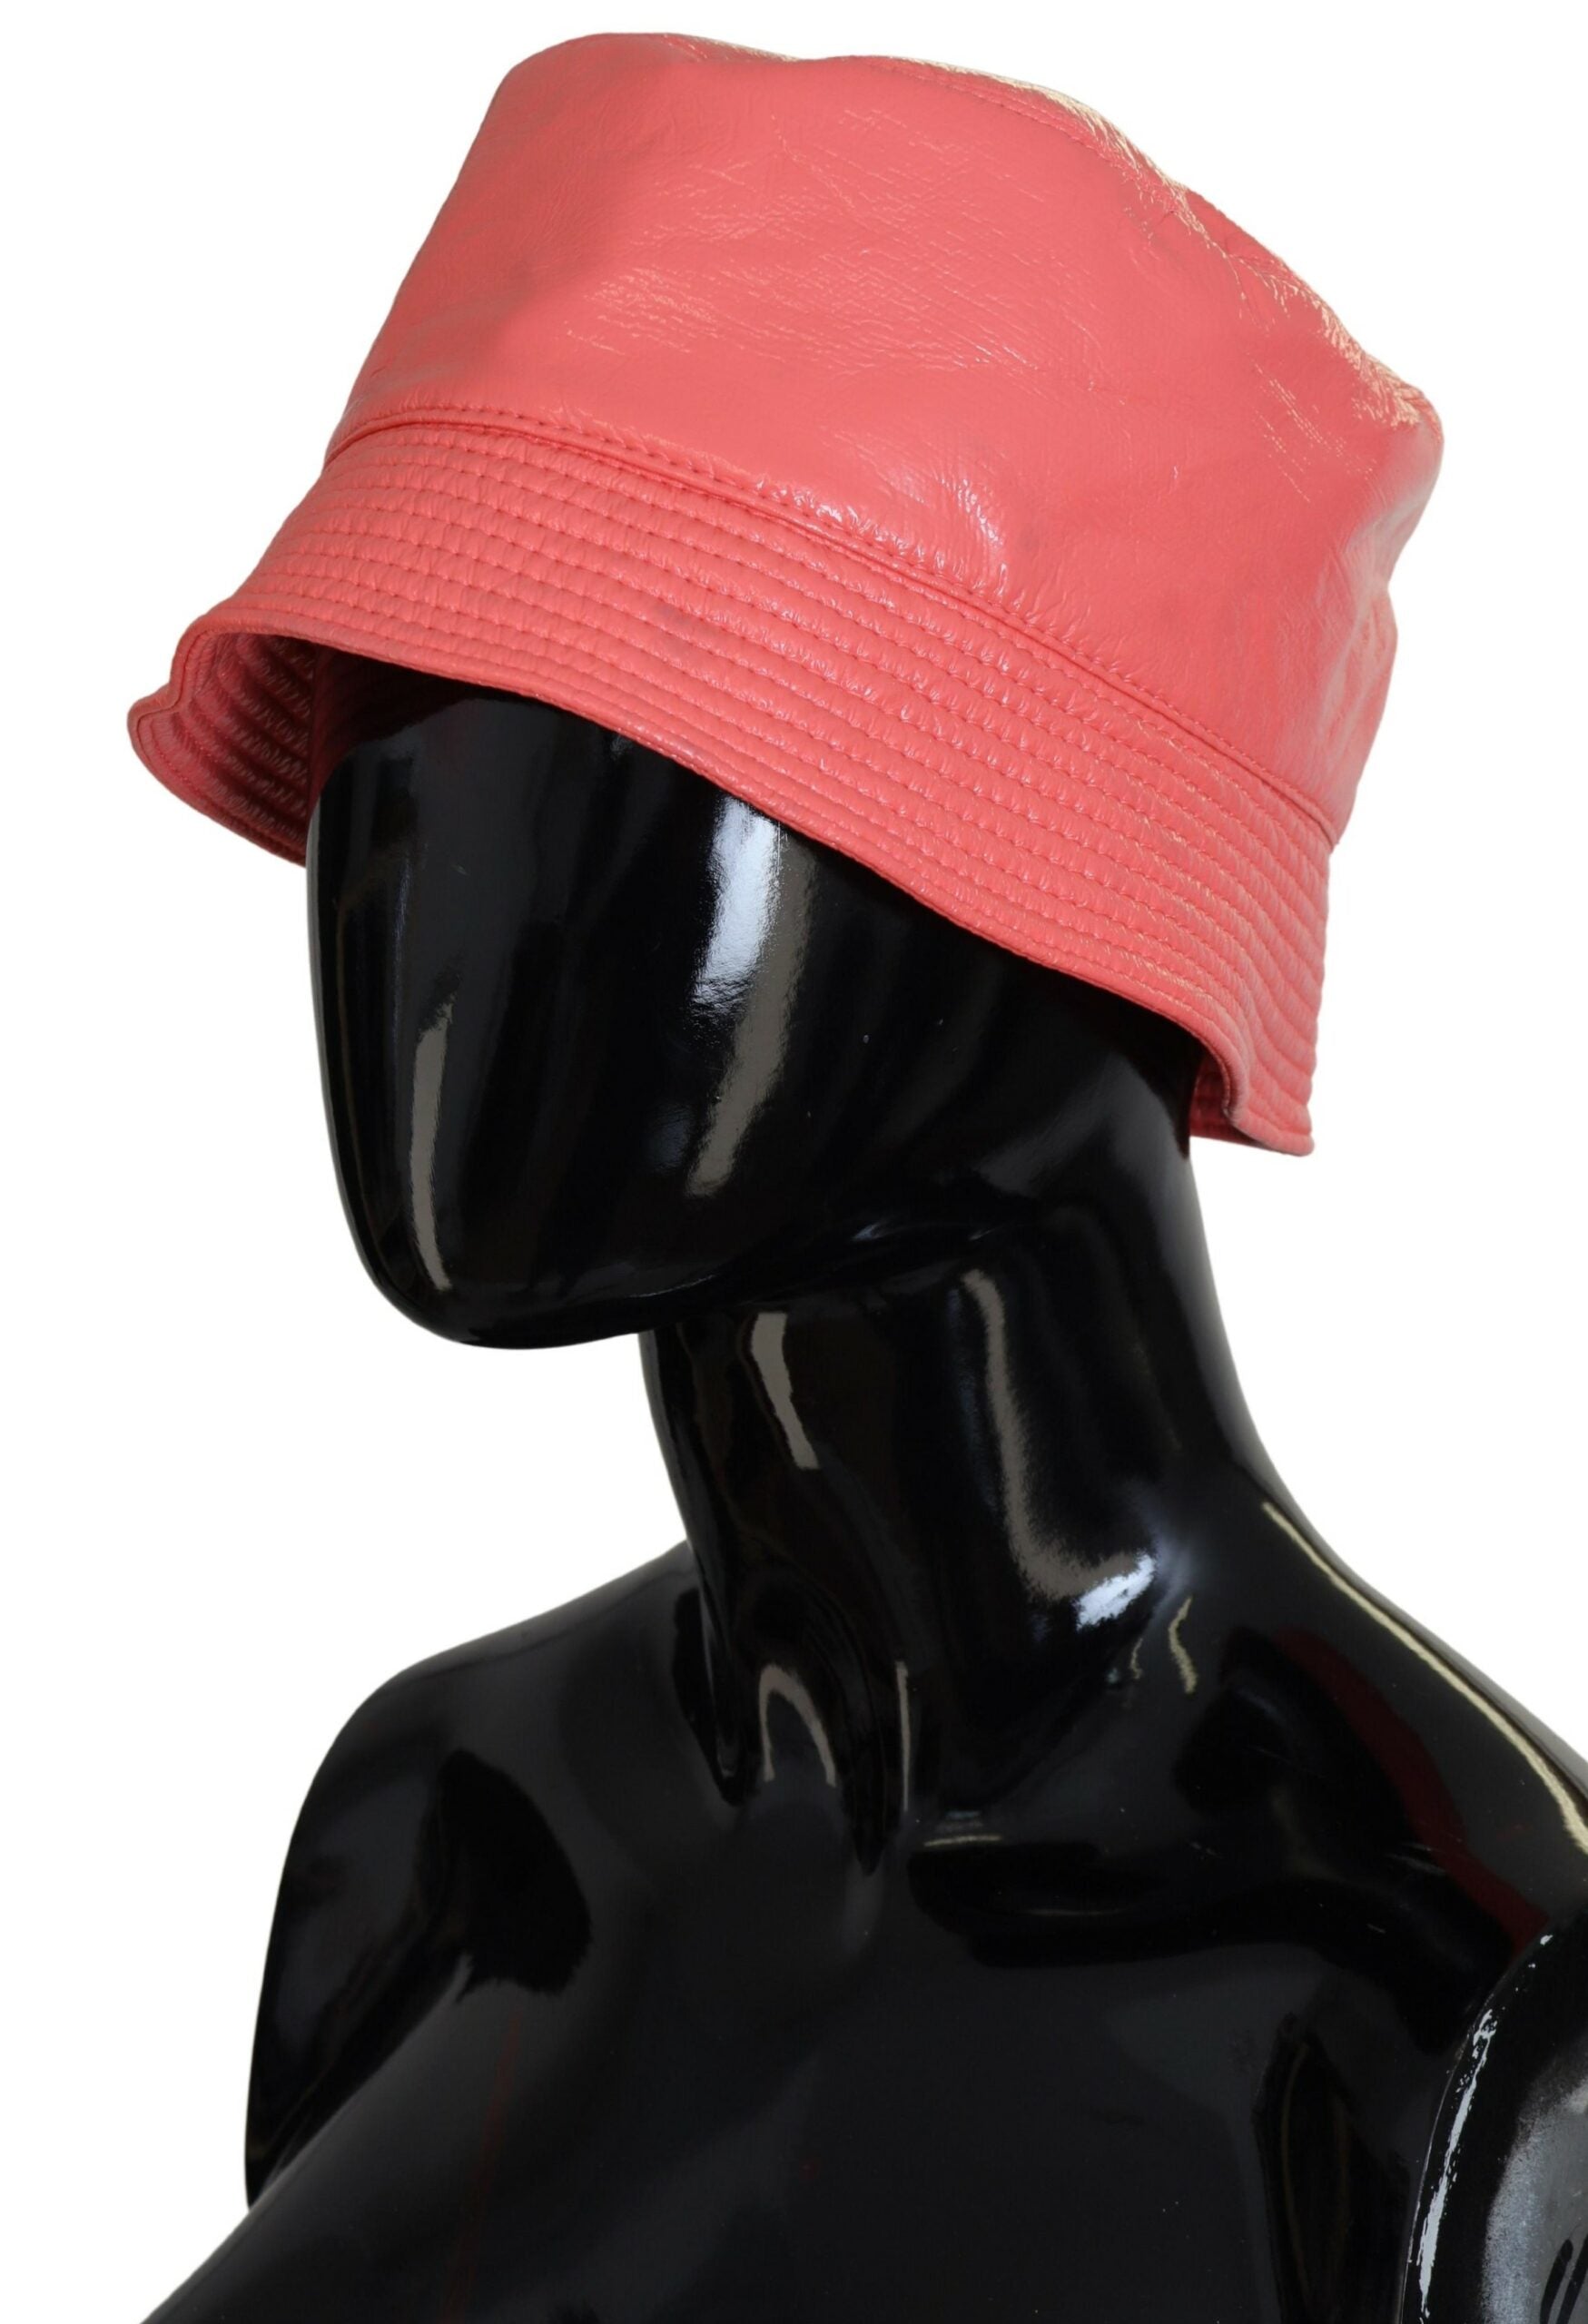 Dolce & Gabbana Elegant Peach Bucket Hat - Summer Chic Essential